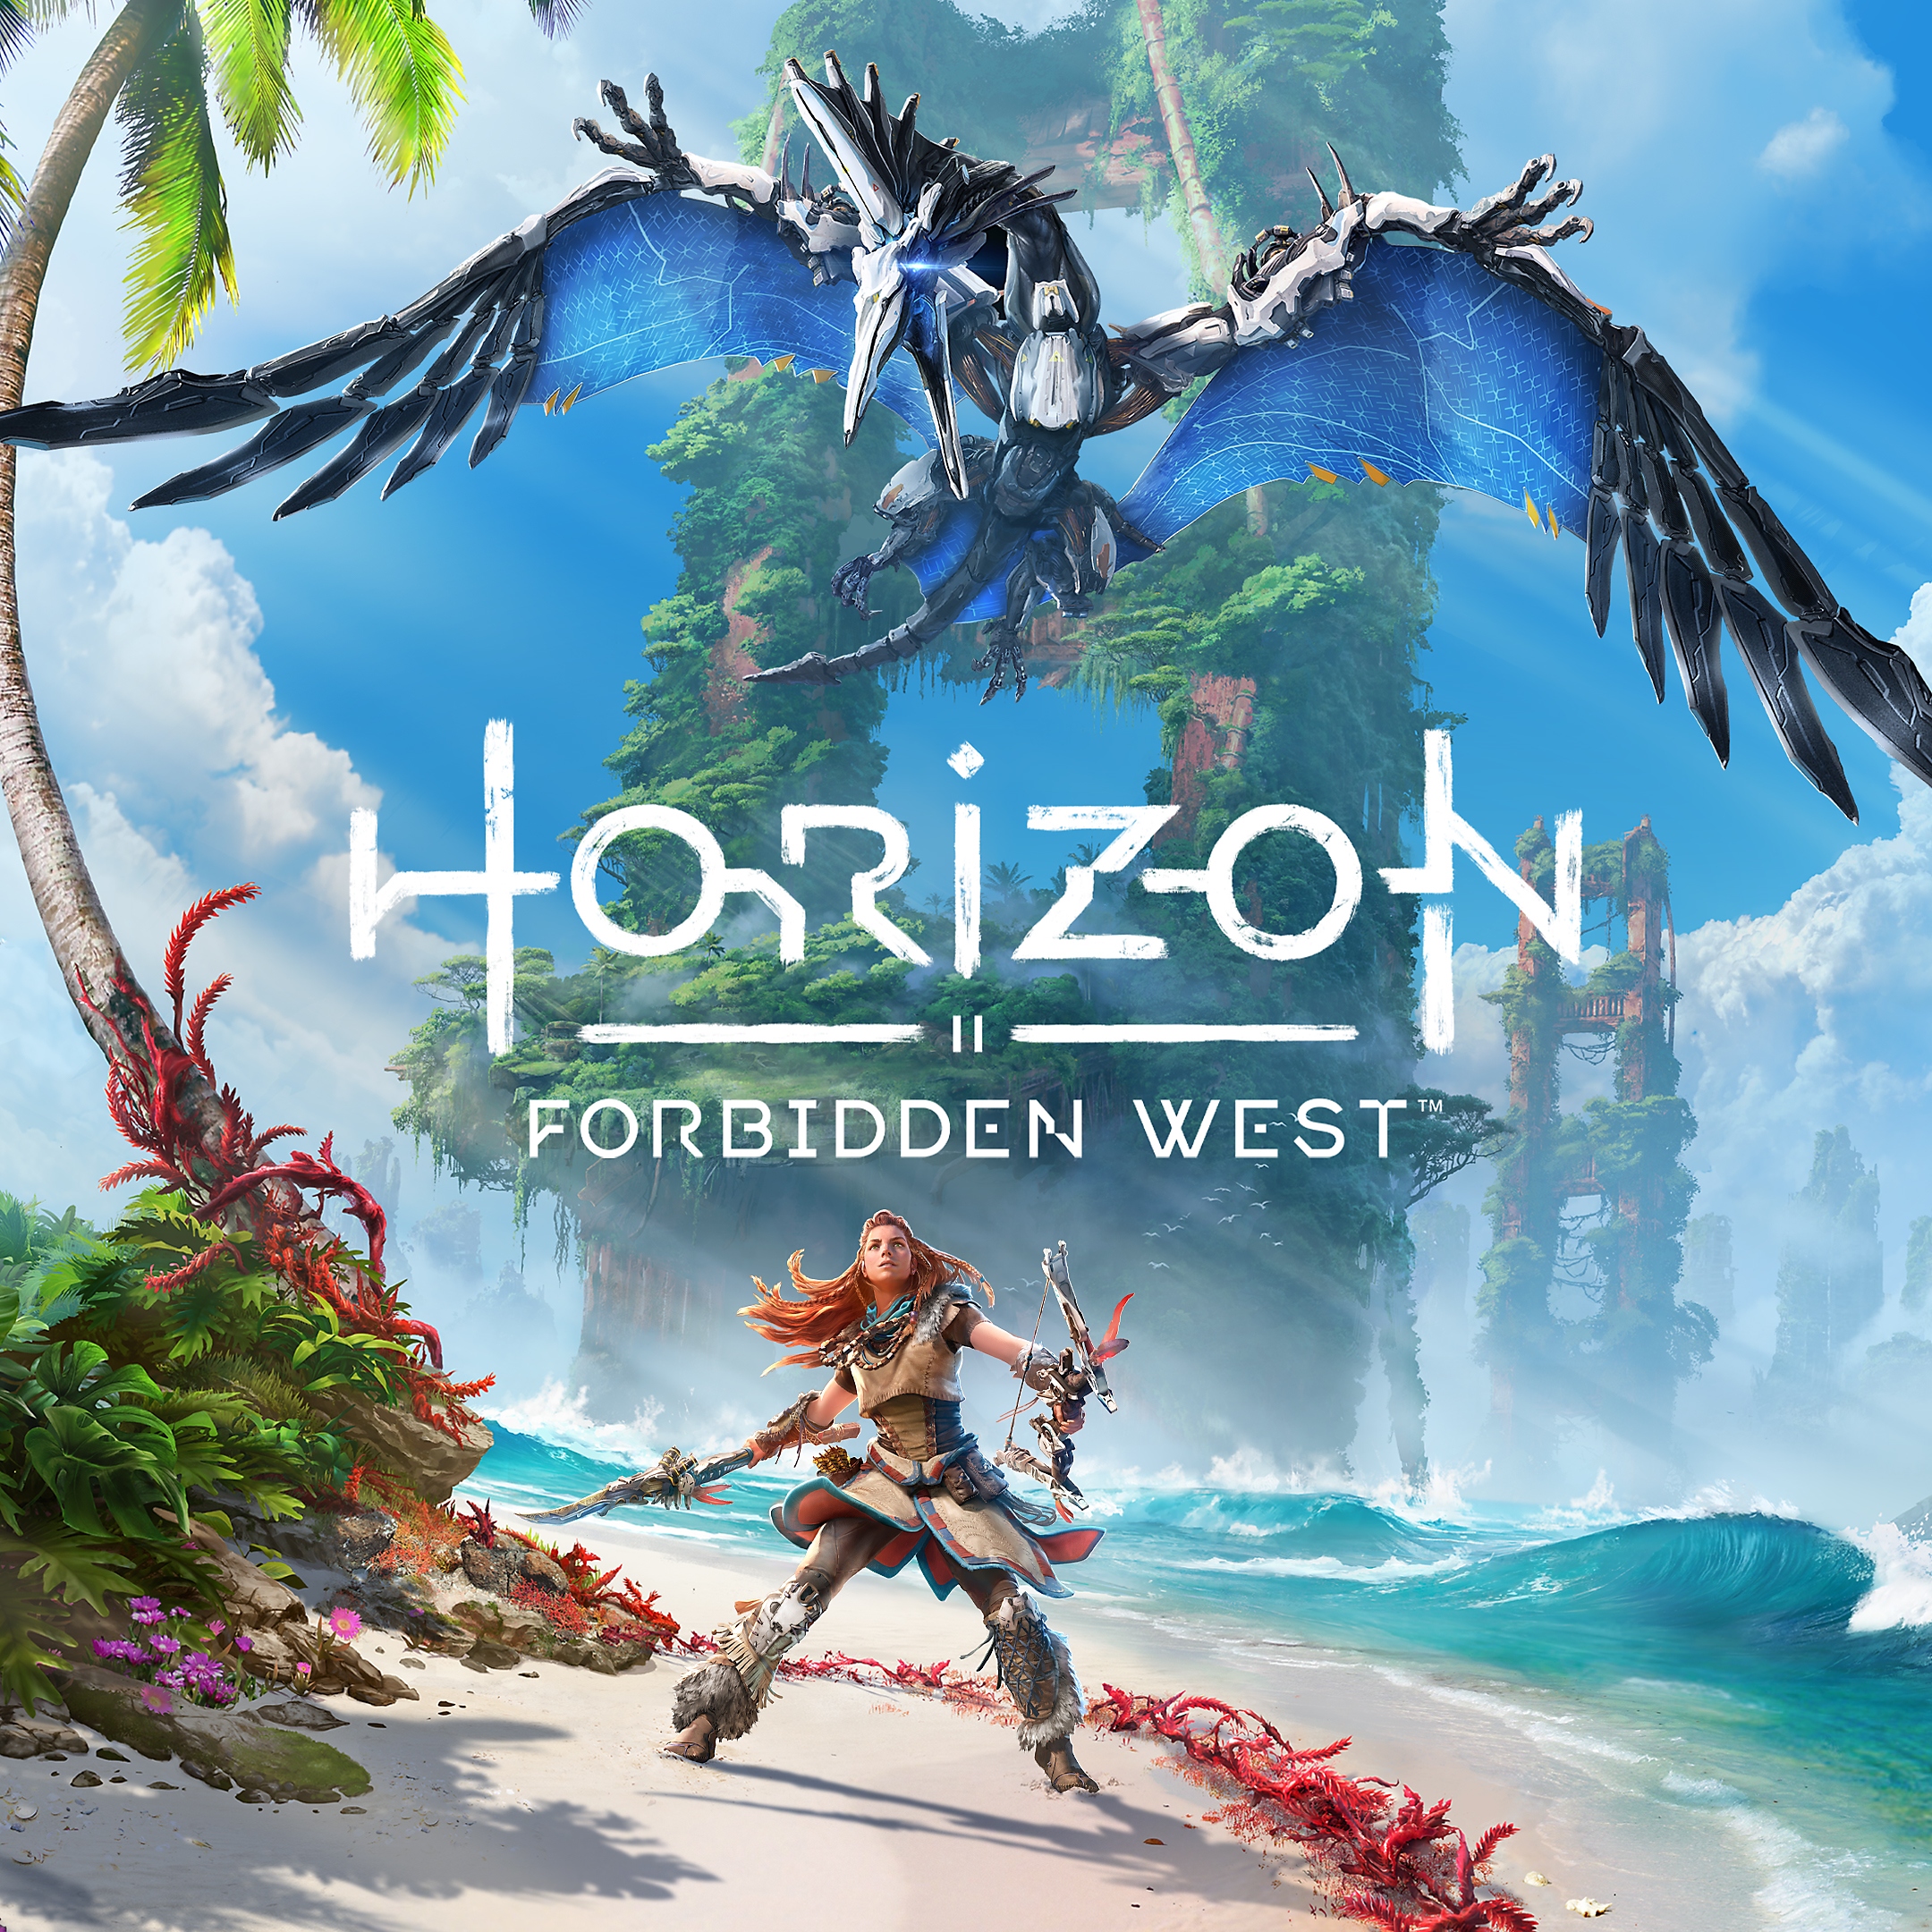 ภาพของ Horizon Forbidden West ที่แสดงให้เห็น Aloy กับศัตรูที่บินอยู่